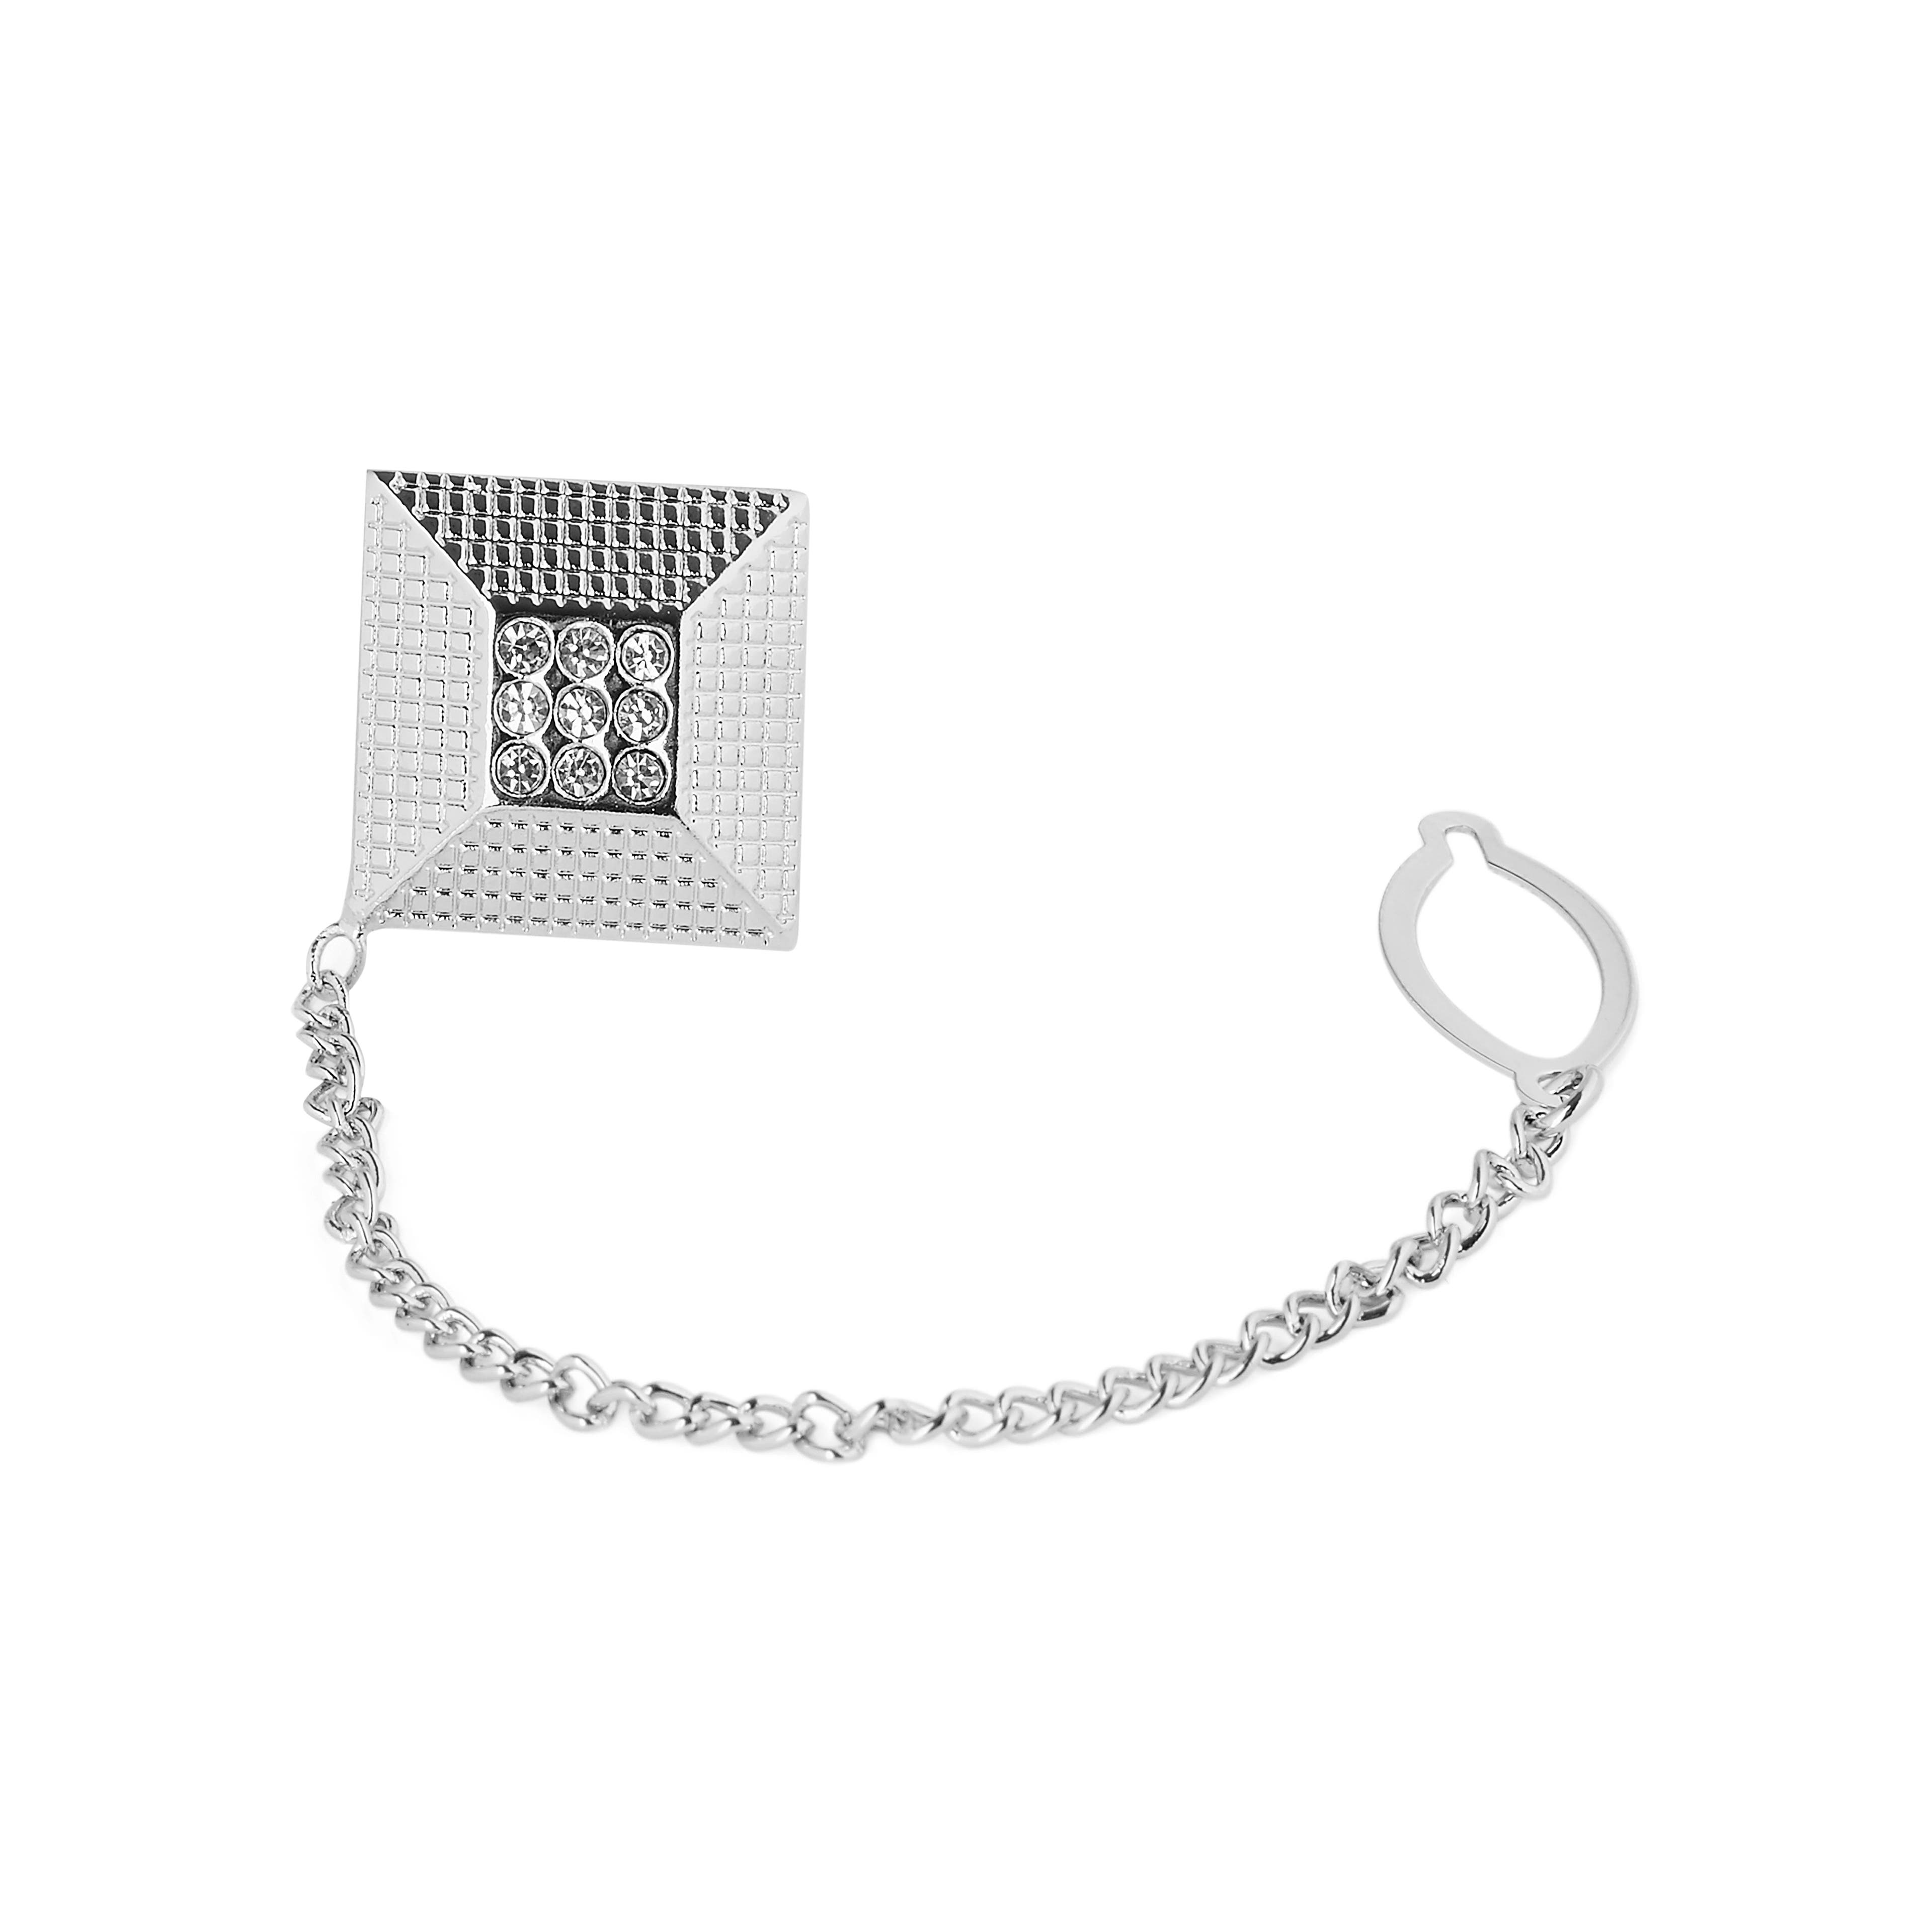 Silver-Tone Pyramid Tie Pin Chain